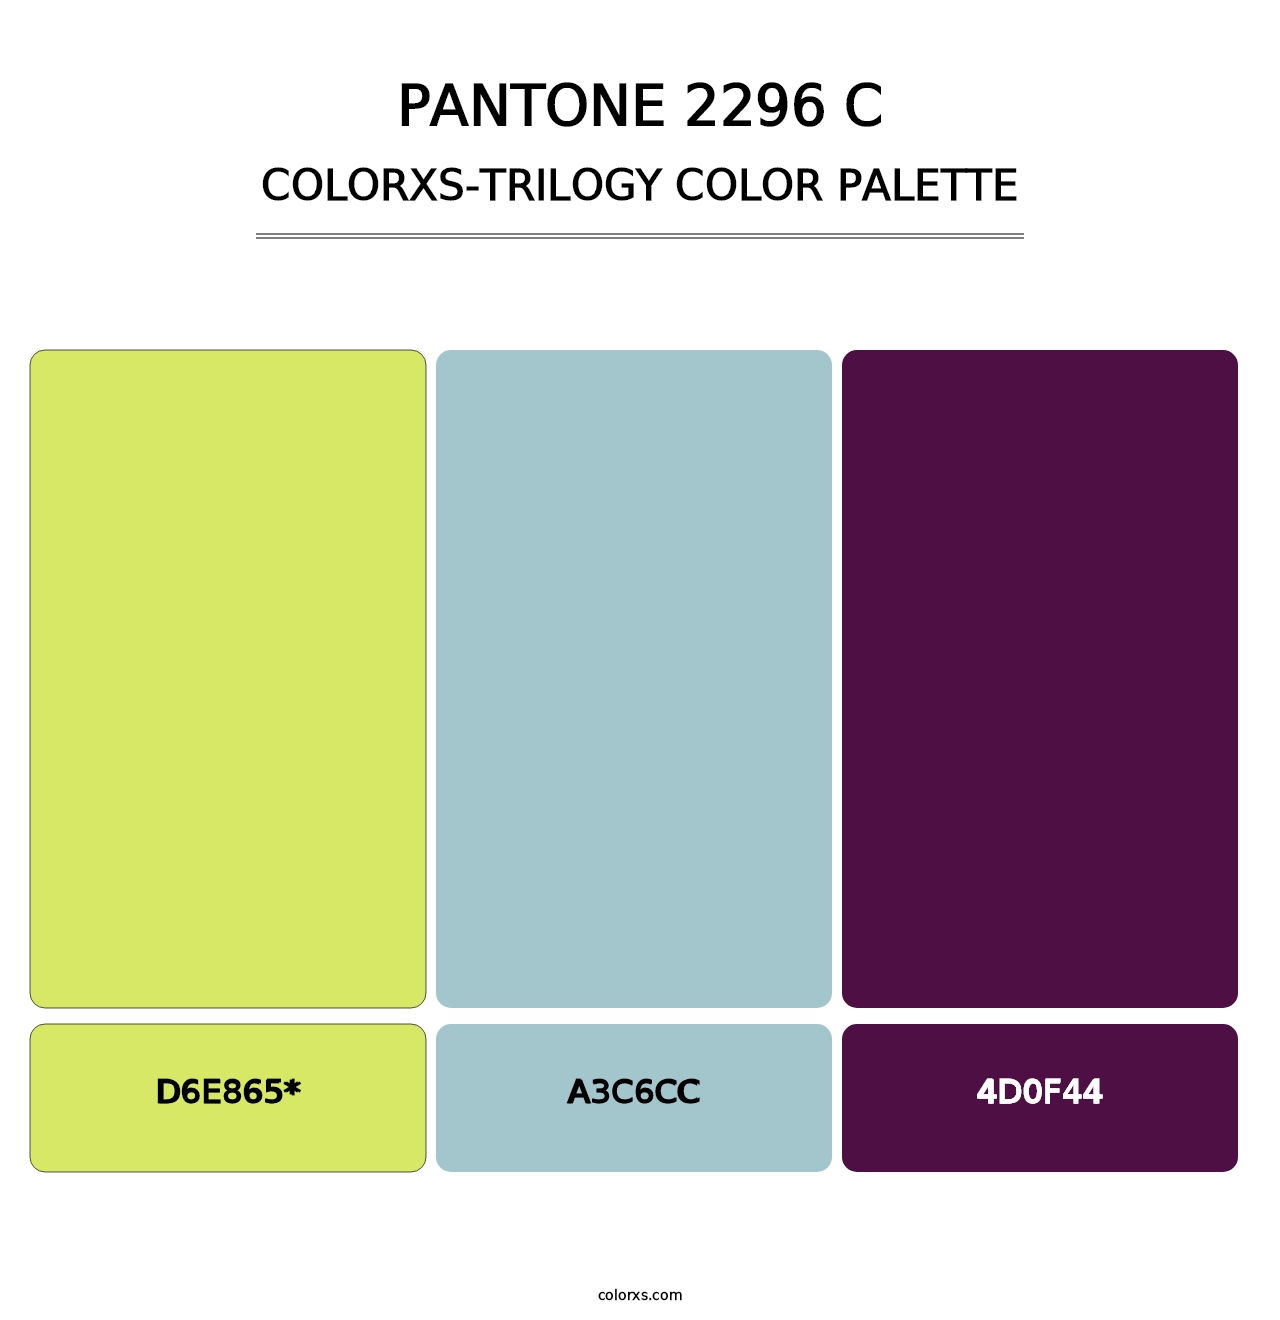 PANTONE 2296 C - Colorxs Trilogy Palette